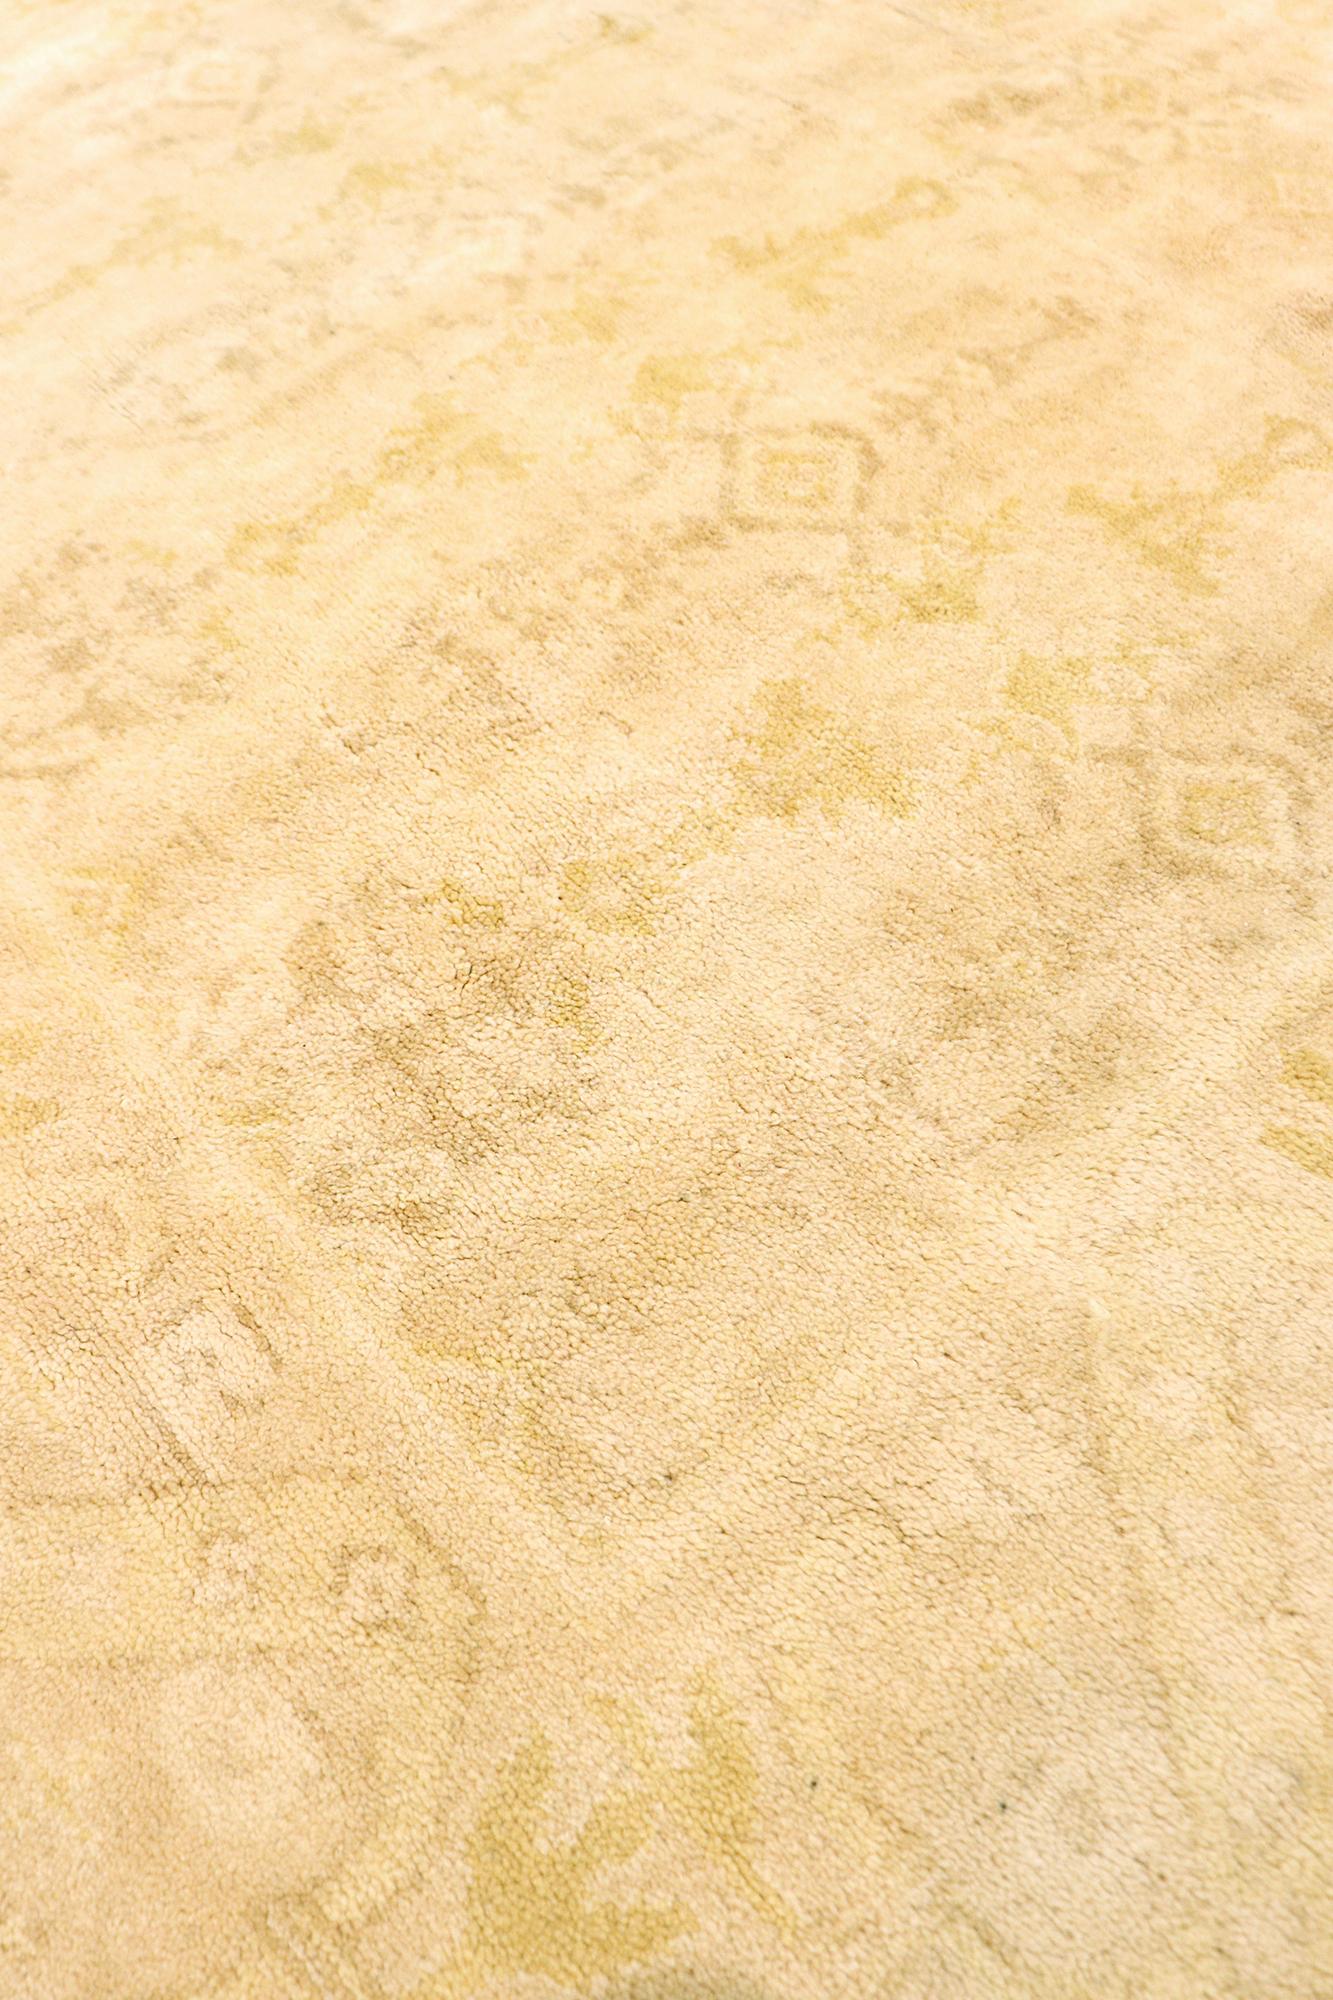 Diese atemberaubende antike spanische Savonnerie dekorative Bereich Teppich ist sowohl exquisit und selten. Herkunft: Spanien, Zeitraum: 1910, Größe: 
17 ft 8 in x 20 ft 6 in 